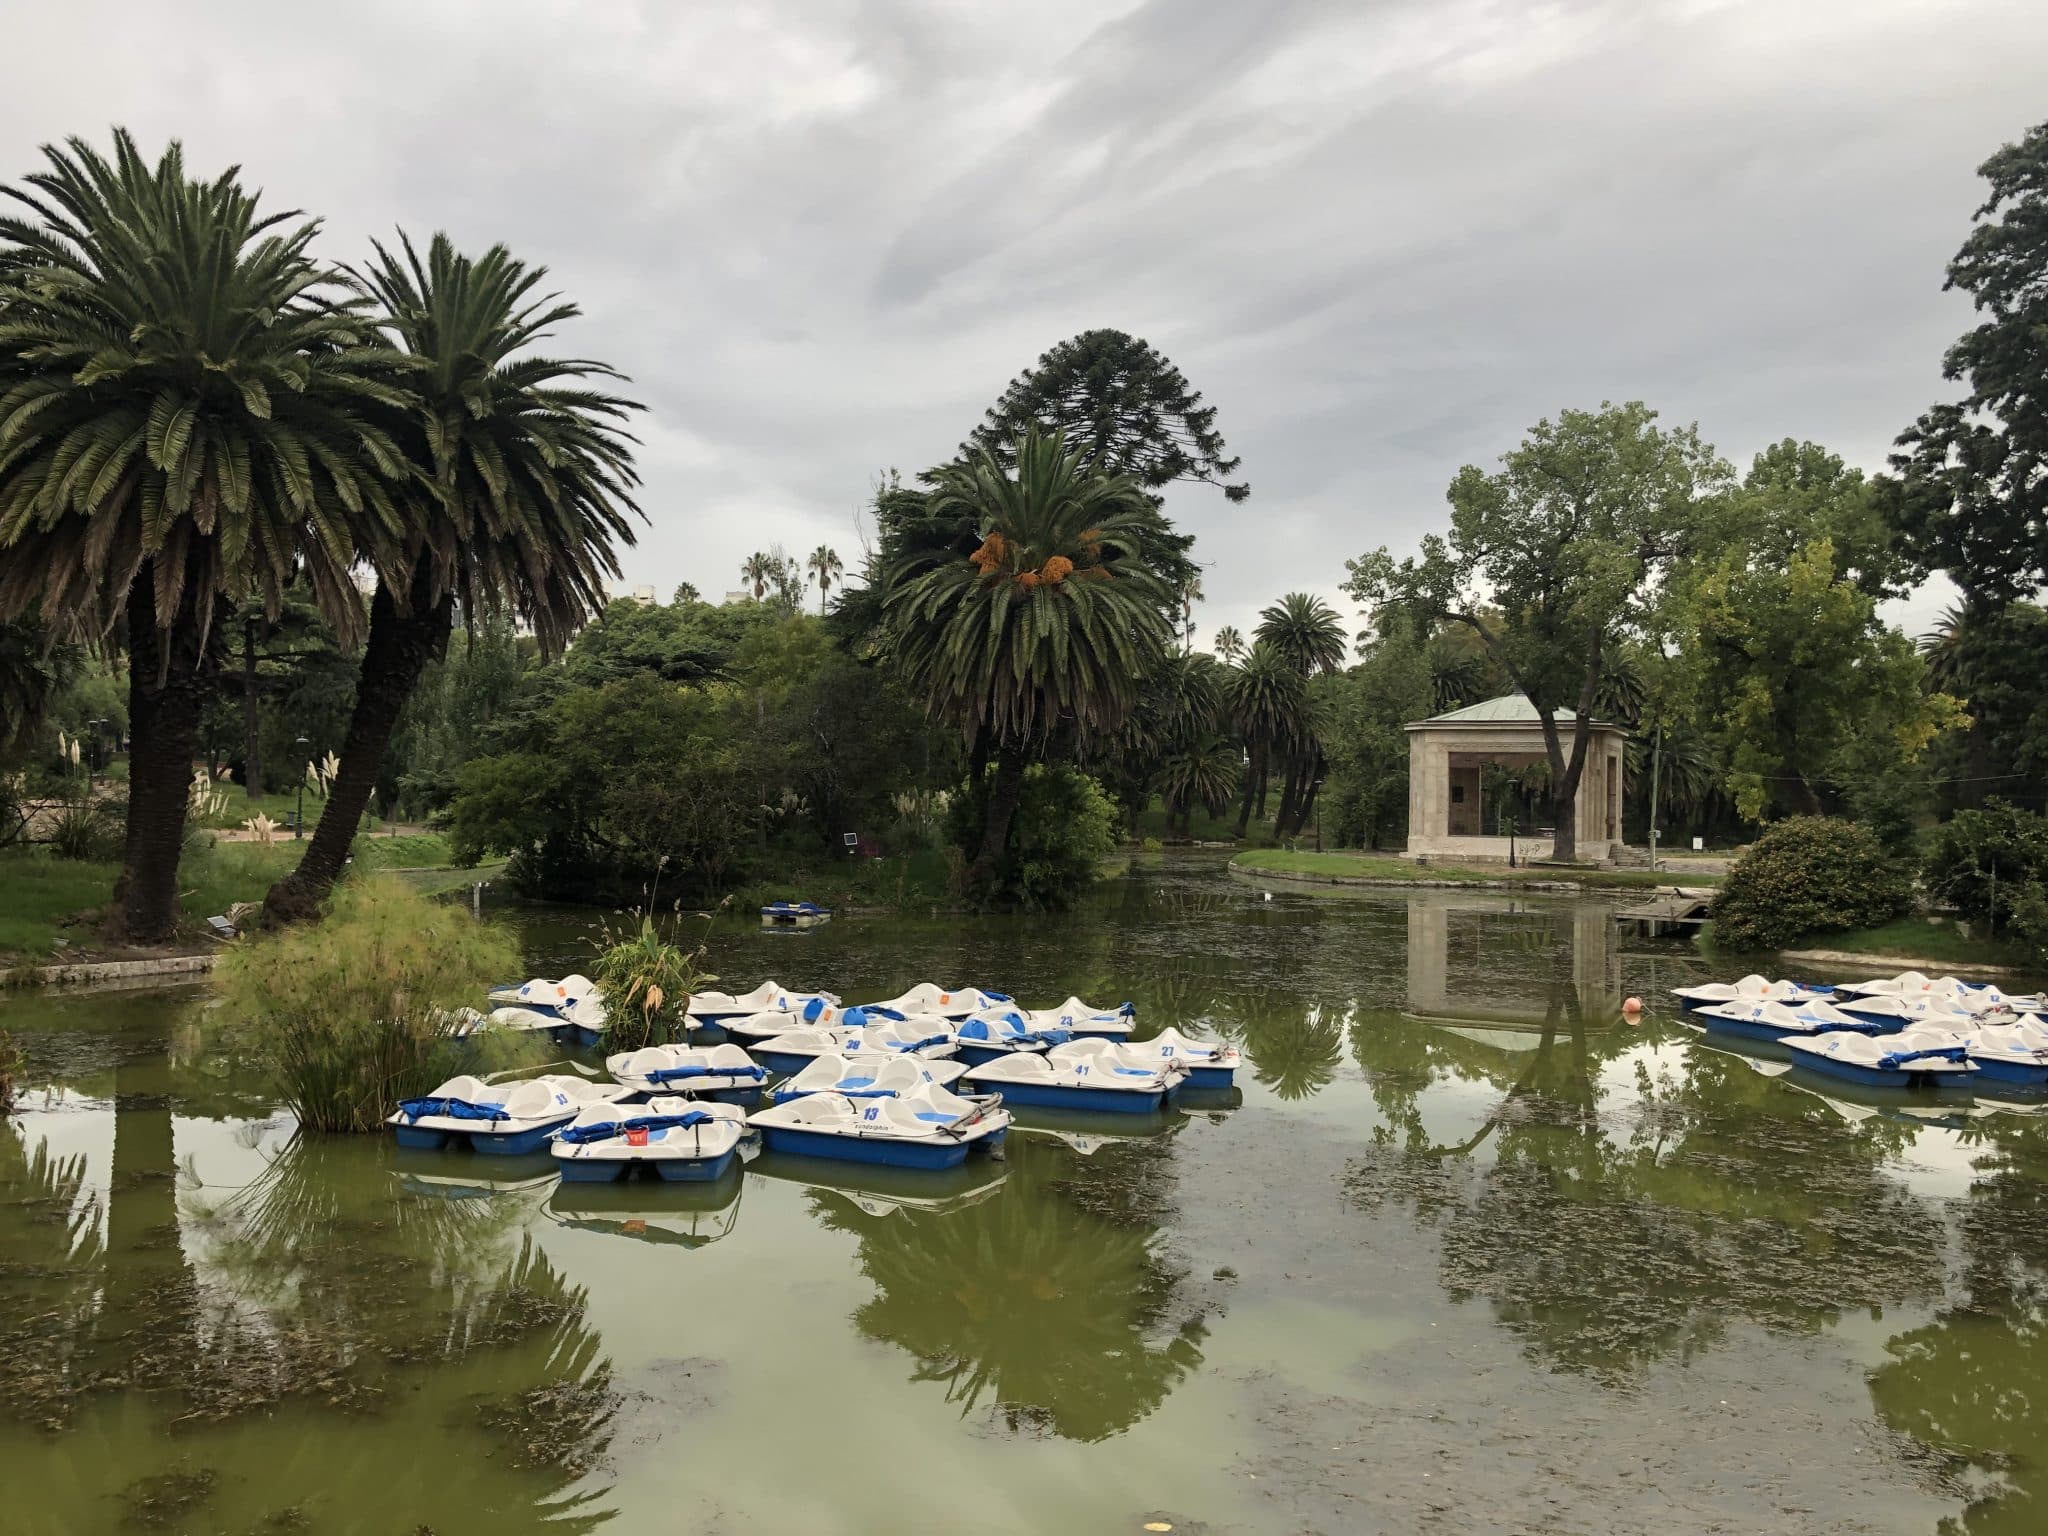 Parque Rodó à Montevideo dans notre article Visiter Montevideo en Uruguay : Que faire et voir à Montevideo en 10 incontournables #visitermontevideo #montevideo #uruguay #incontournablesmontevideo #ameriquedusud